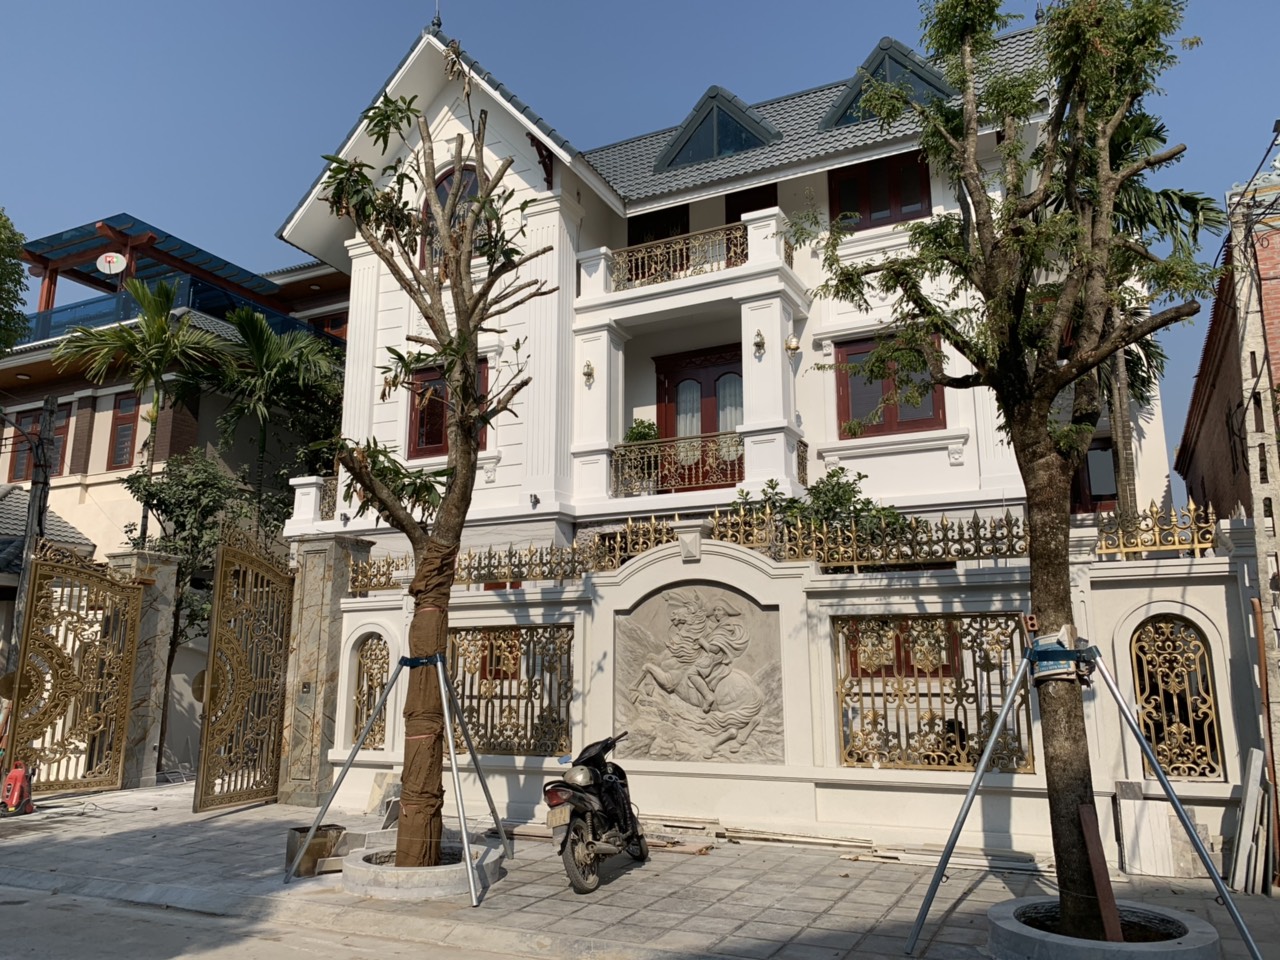 Thiết kế Biệt Thự tại Thanh Hóa Cải tạo biệt thự Bình Minh; 1576577799 0